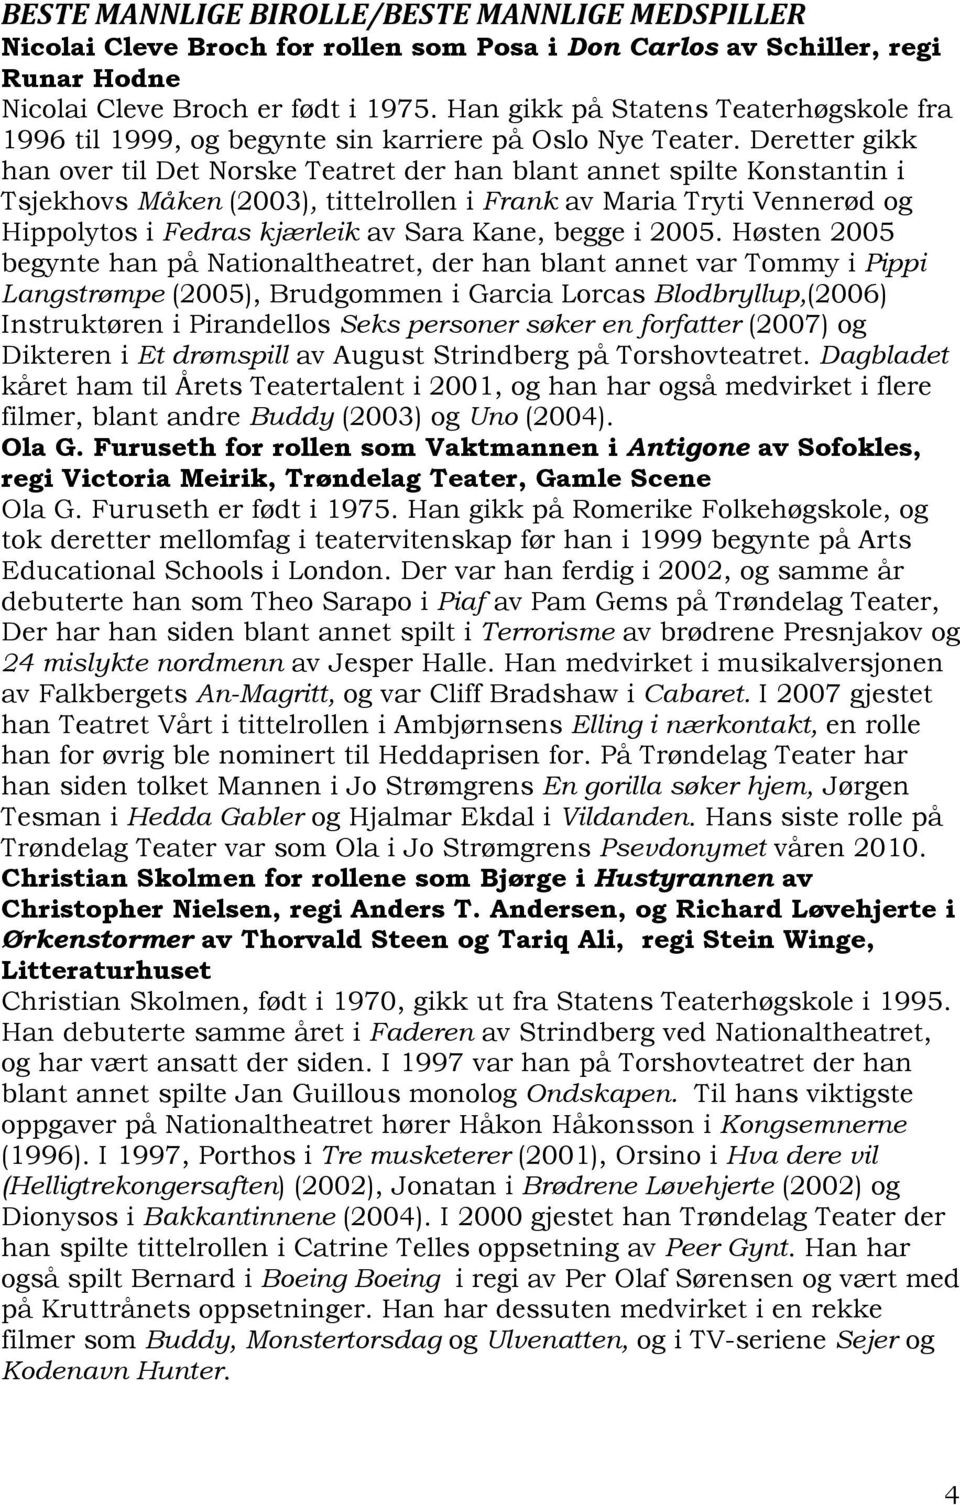 Deretter gikk han over til Det Norske Teatret der han blant annet spilte Konstantin i Tsjekhovs Måken (2003), tittelrollen i Frank av Maria Tryti Vennerød og Hippolytos i Fedras kjærleik av Sara